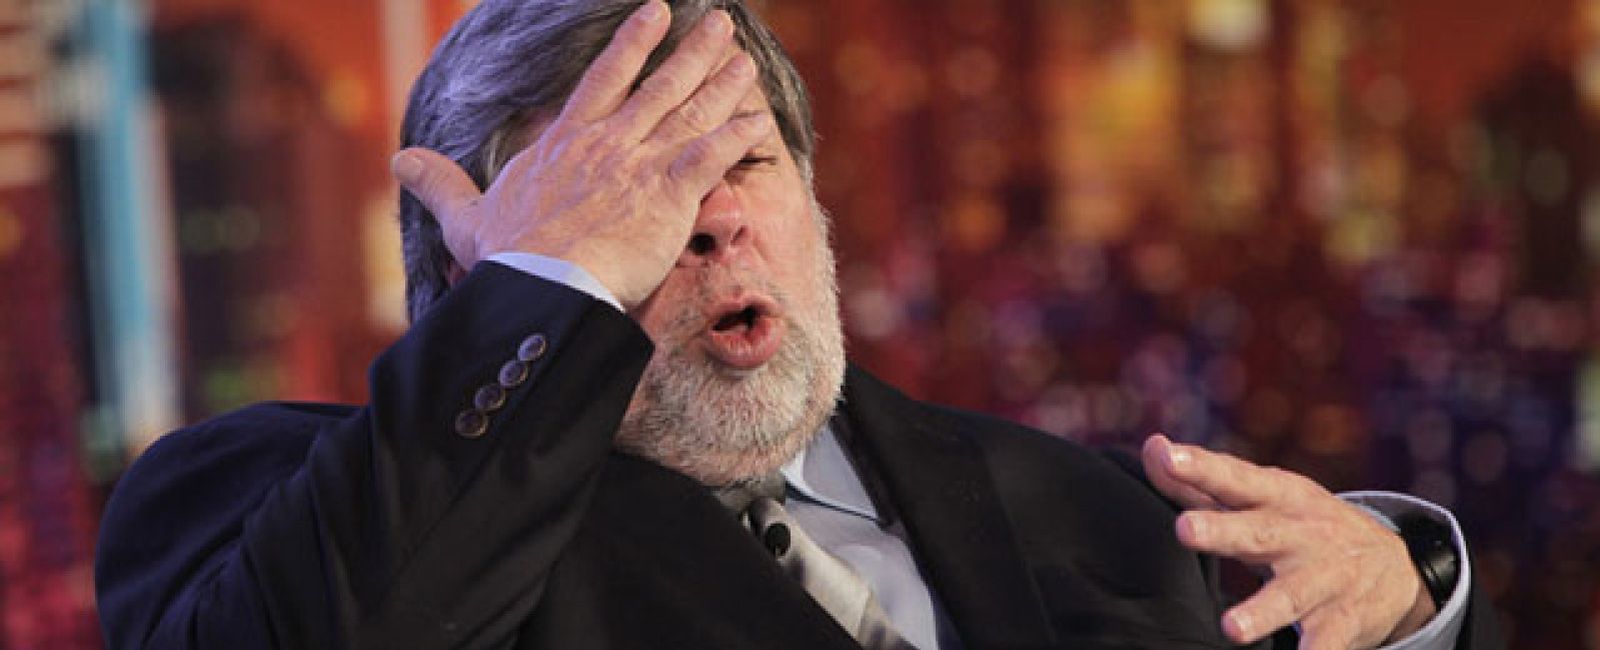 Foto: Wozniak clama contra el 'biopic' de Jobs: "Está completamente equivocado"